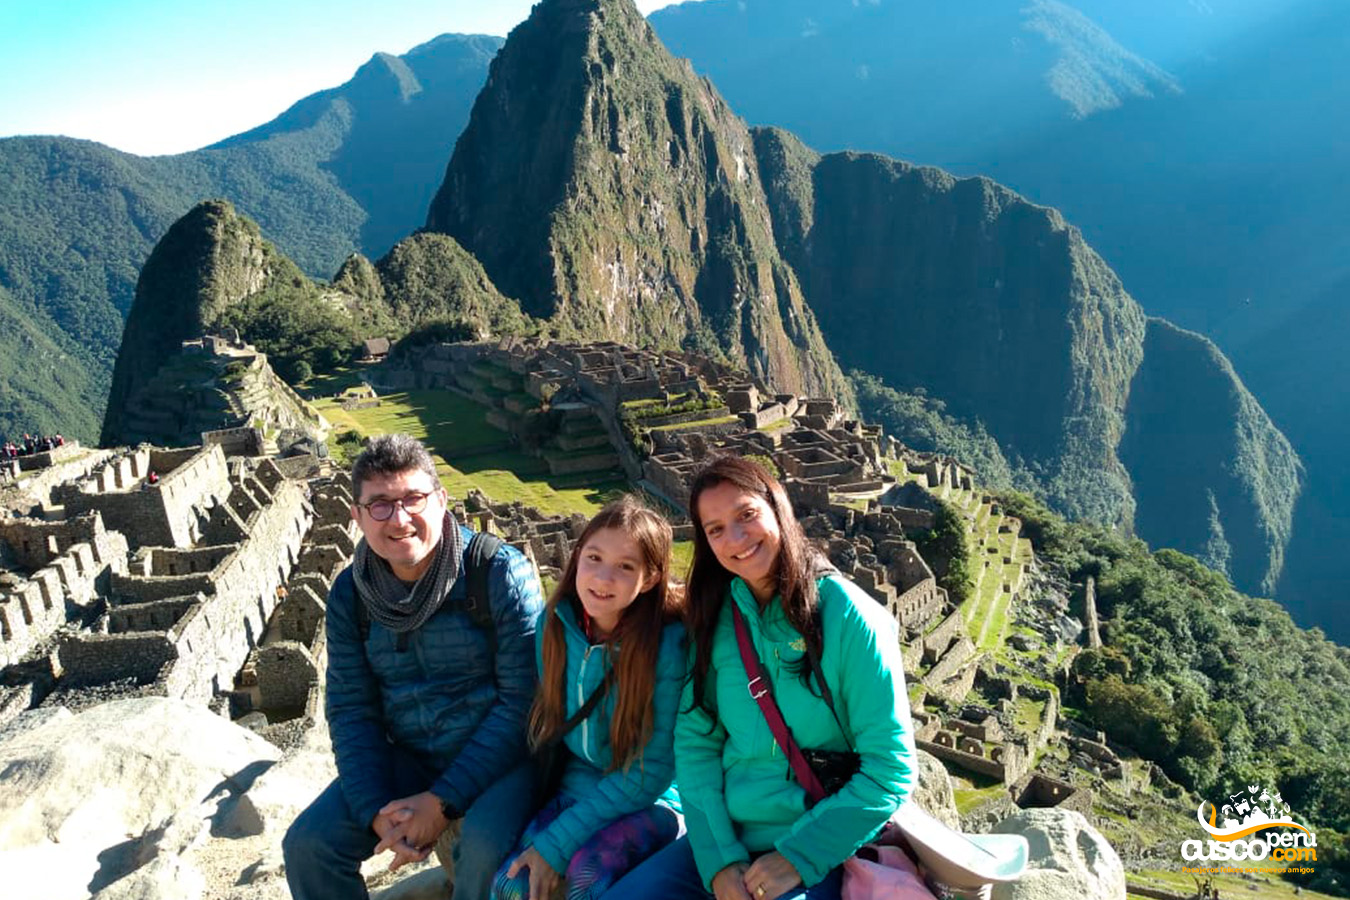 Familia en Machu Picchu. Fuente: CuscoPeru.com